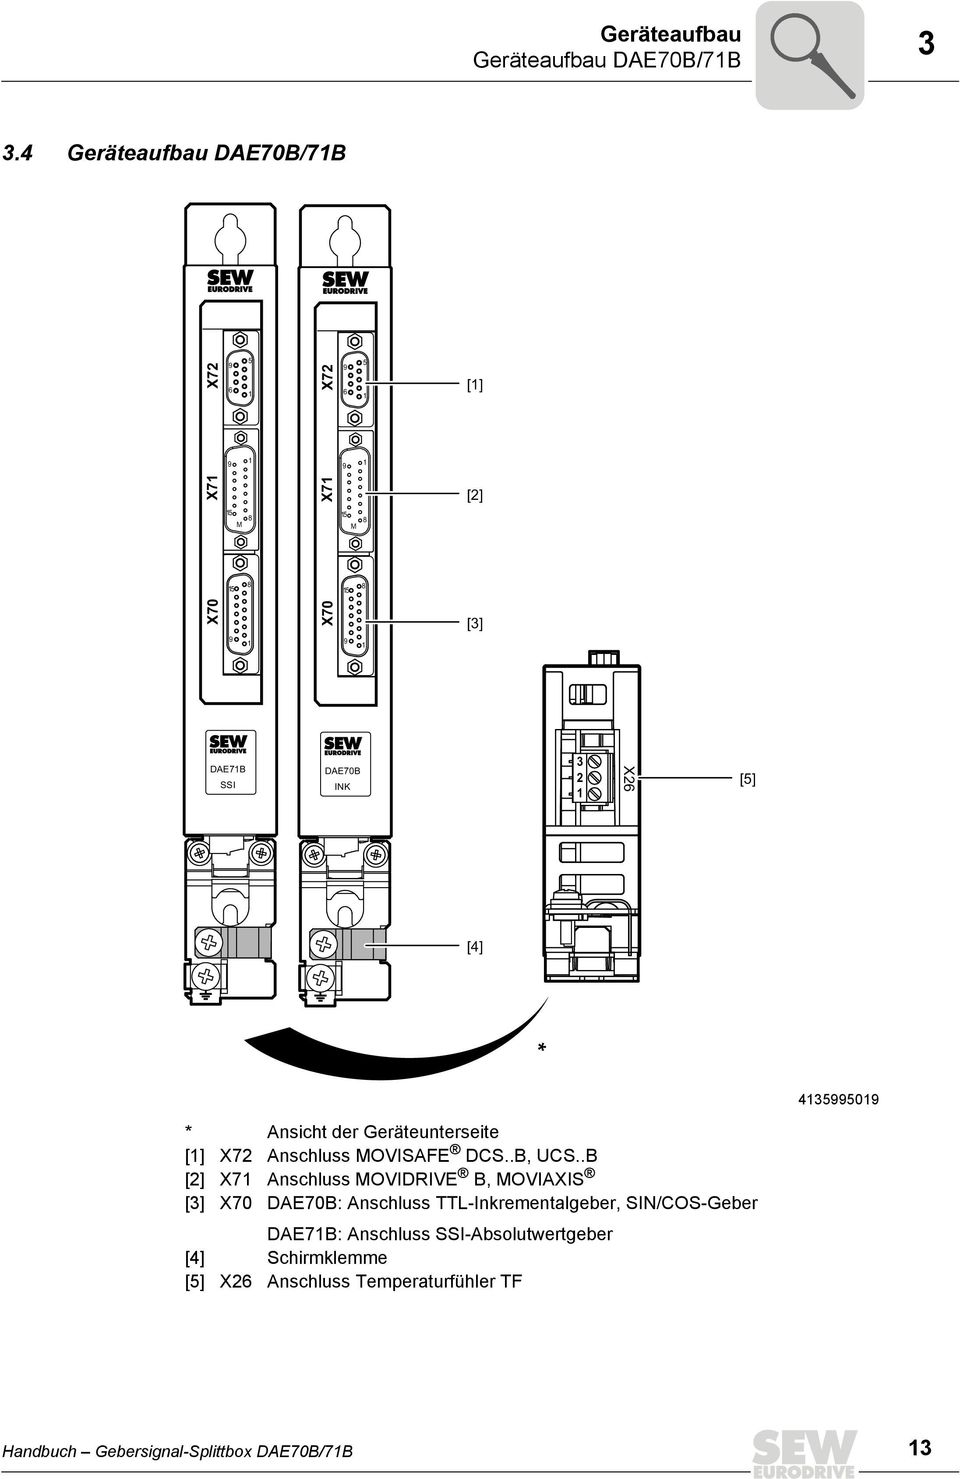 [4] * 43550 * Ansicht der Geräteunterseite [] X72 Anschluss MOVISAFE DCS..B, UCS.